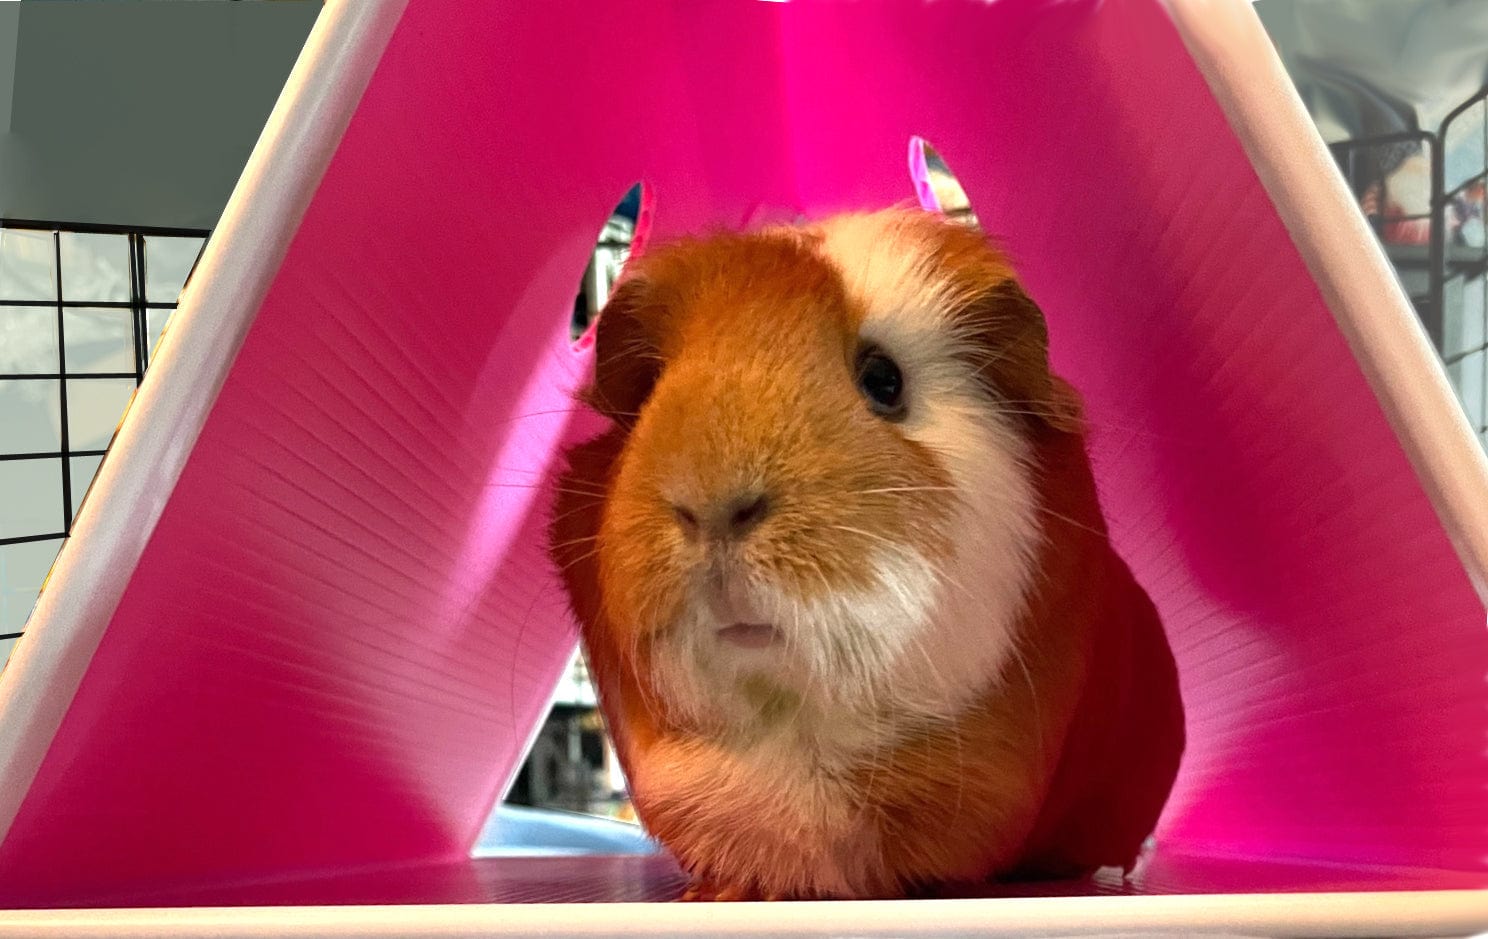 Cute guinea pig enjoying a pink floortime hidey